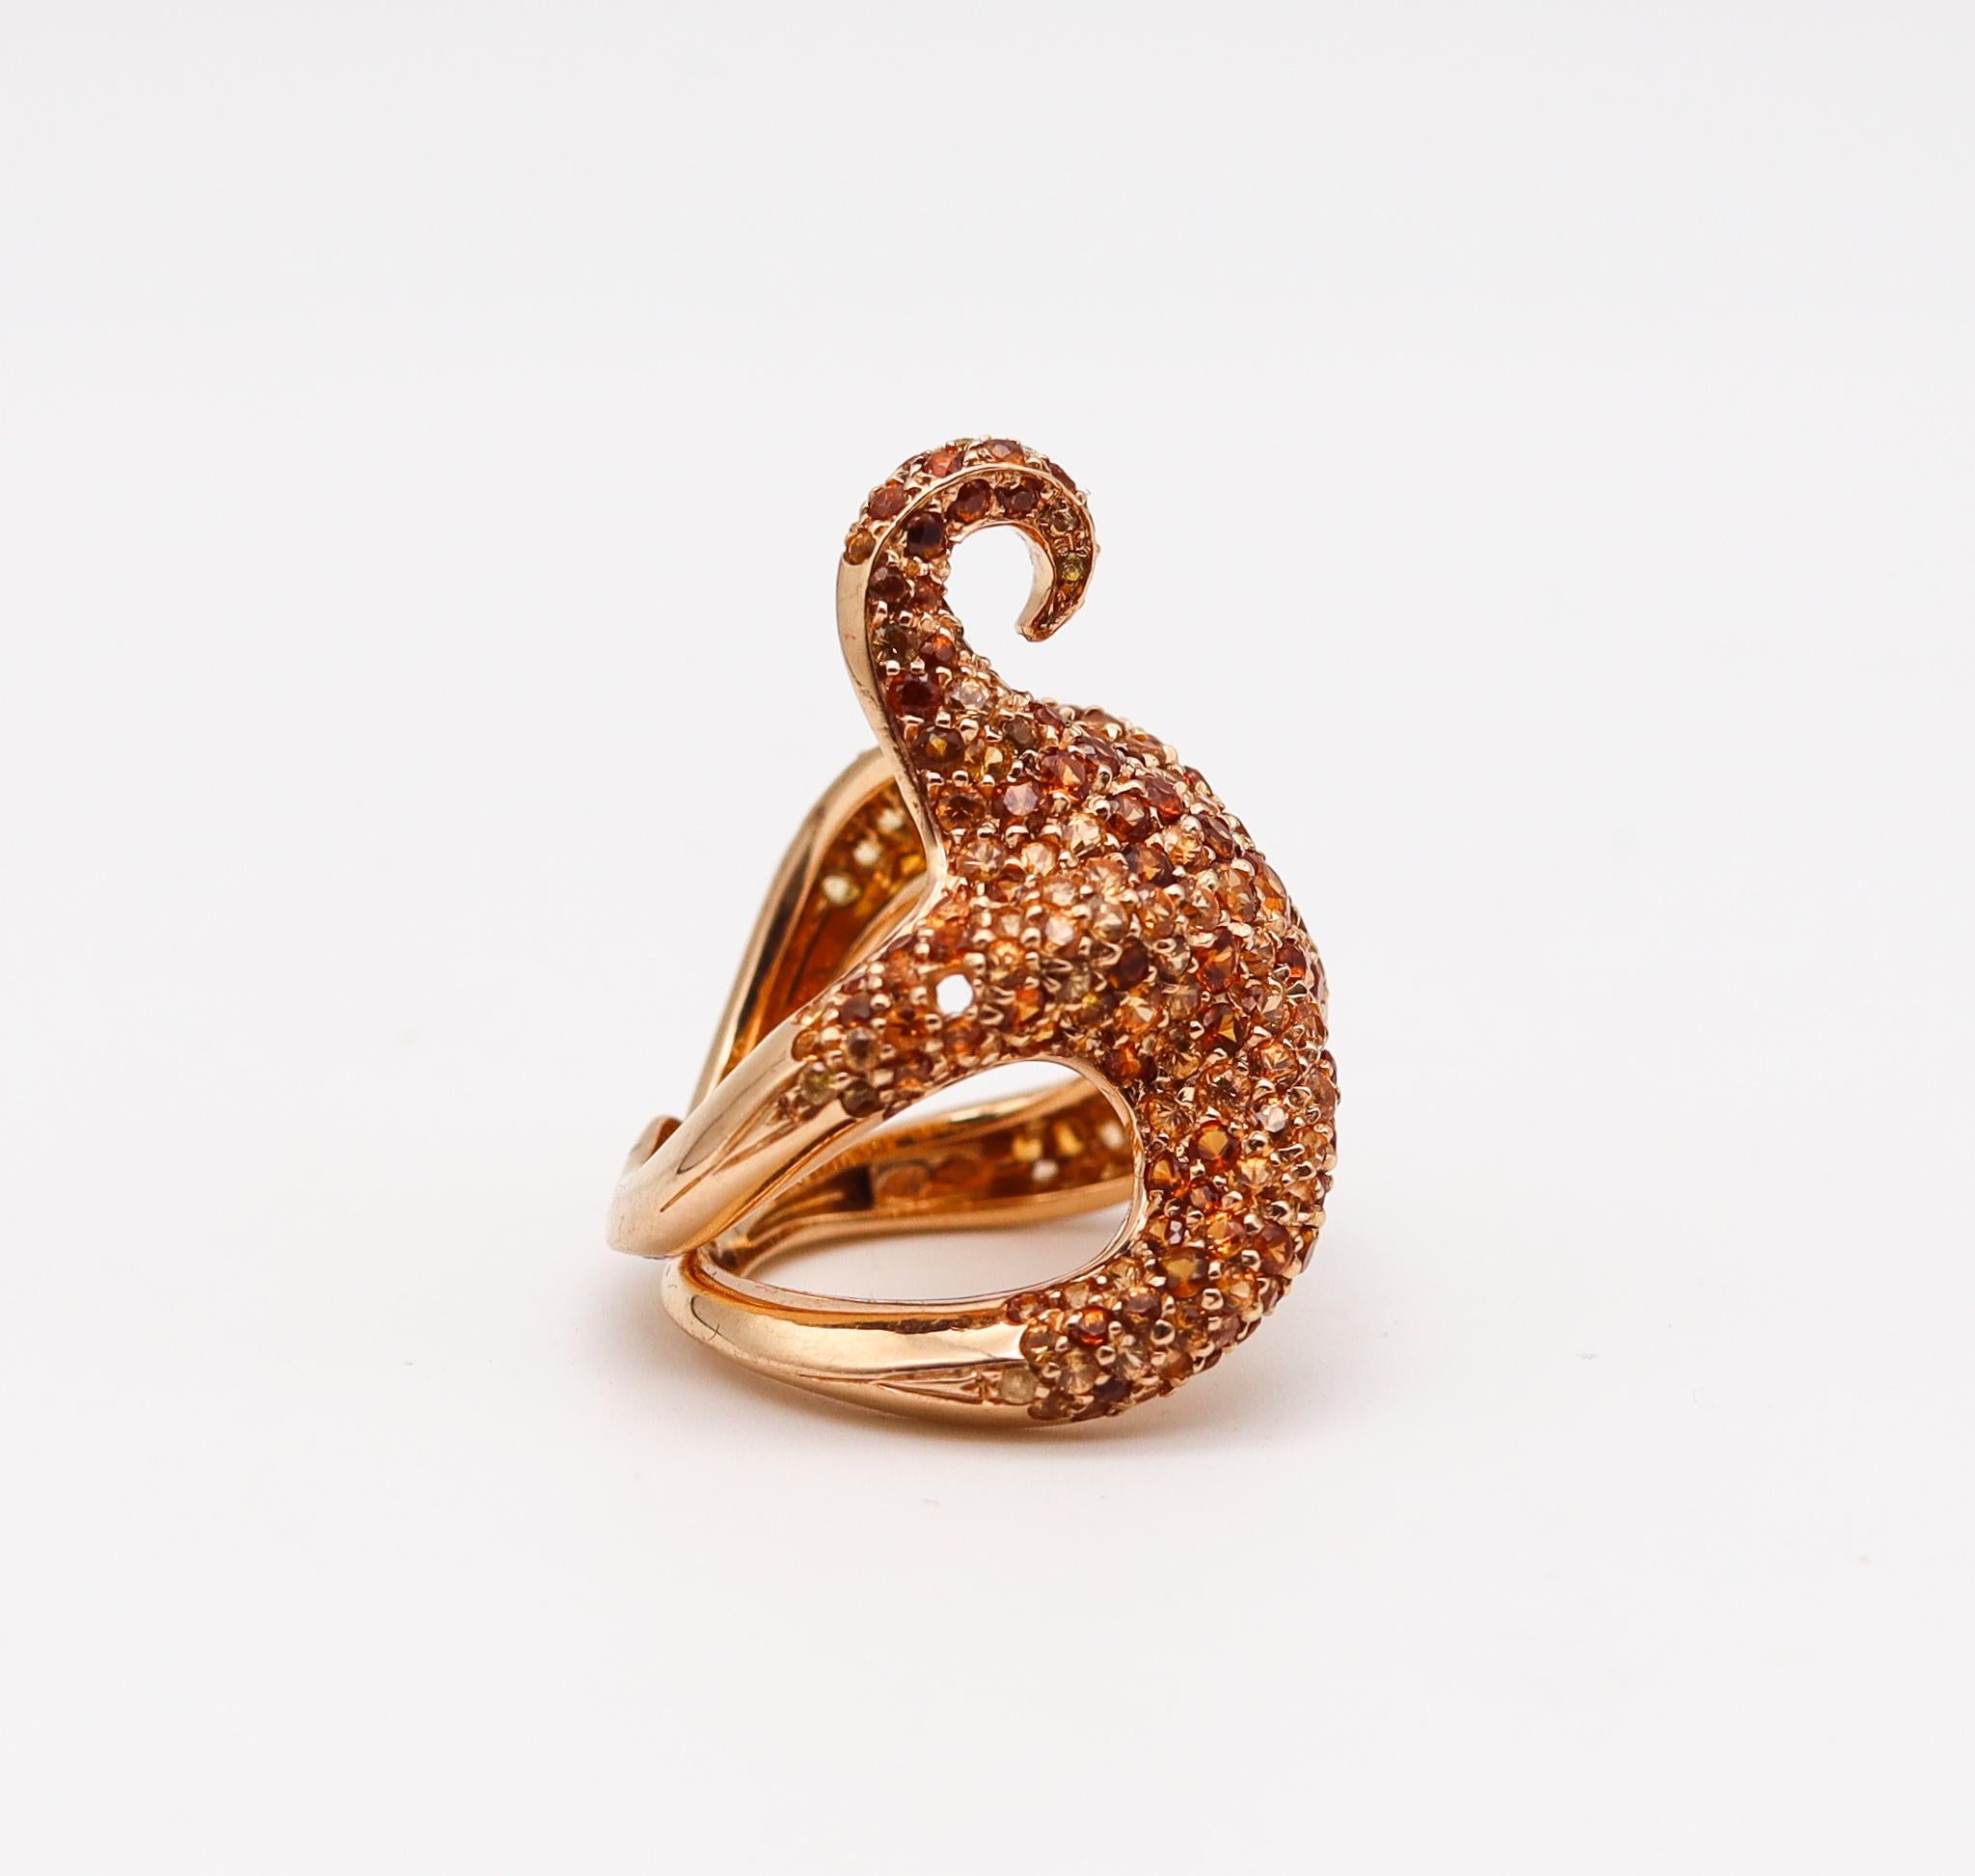 Modernist Boucheron Paris Sculptural Octopussy Ring 18Kt Yellow Gold with 10.71 Ctw Gems